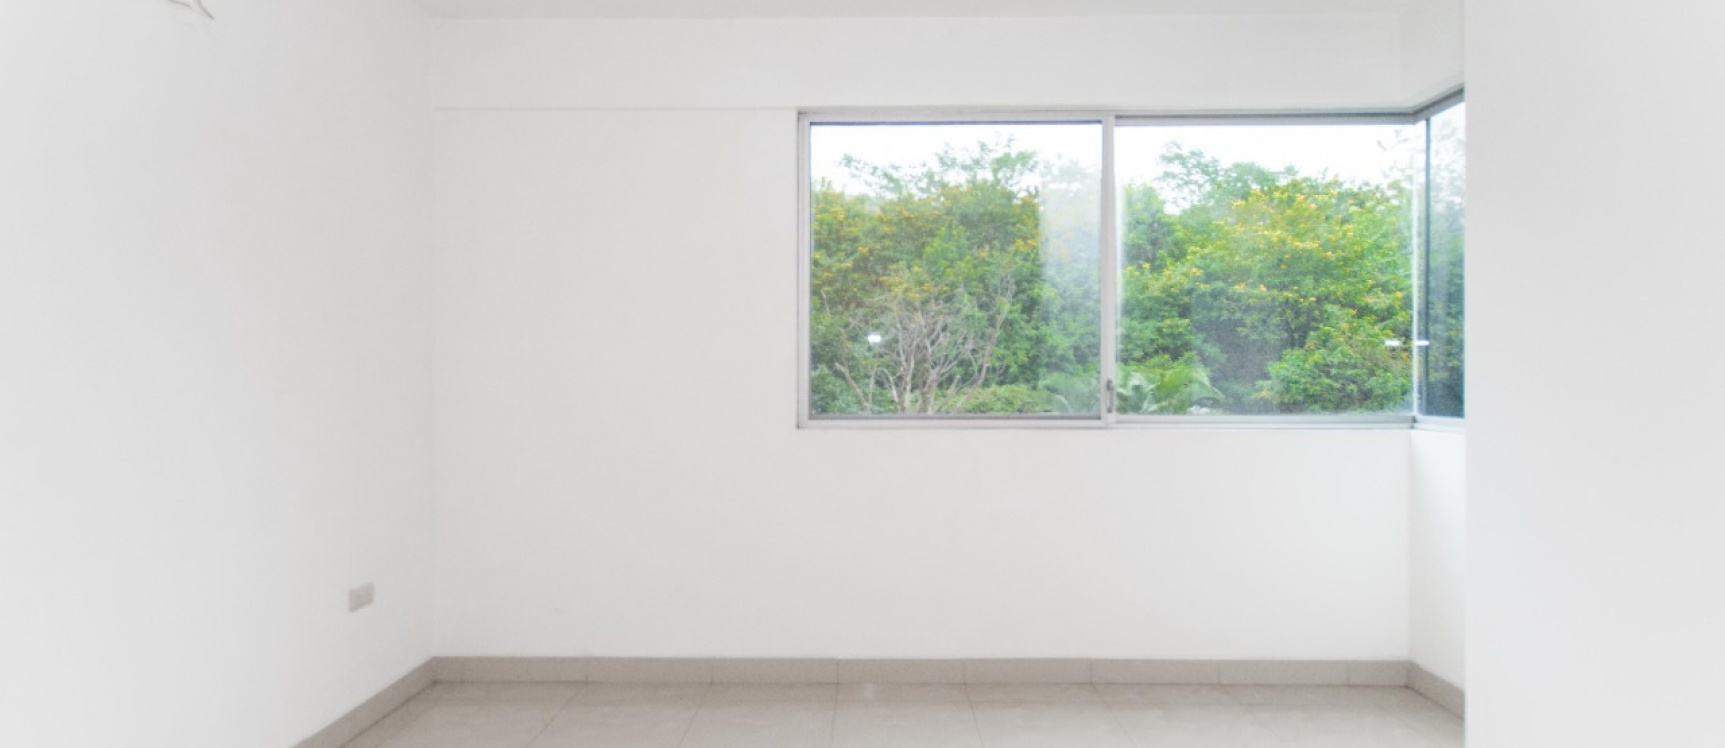 GeoBienes - Departamento de 2 habitaciones en venta, Condominio Vizcaya Gardens, Ceibos - Plusvalia Guayaquil Casas de venta y alquiler Inmobiliaria Ecuador